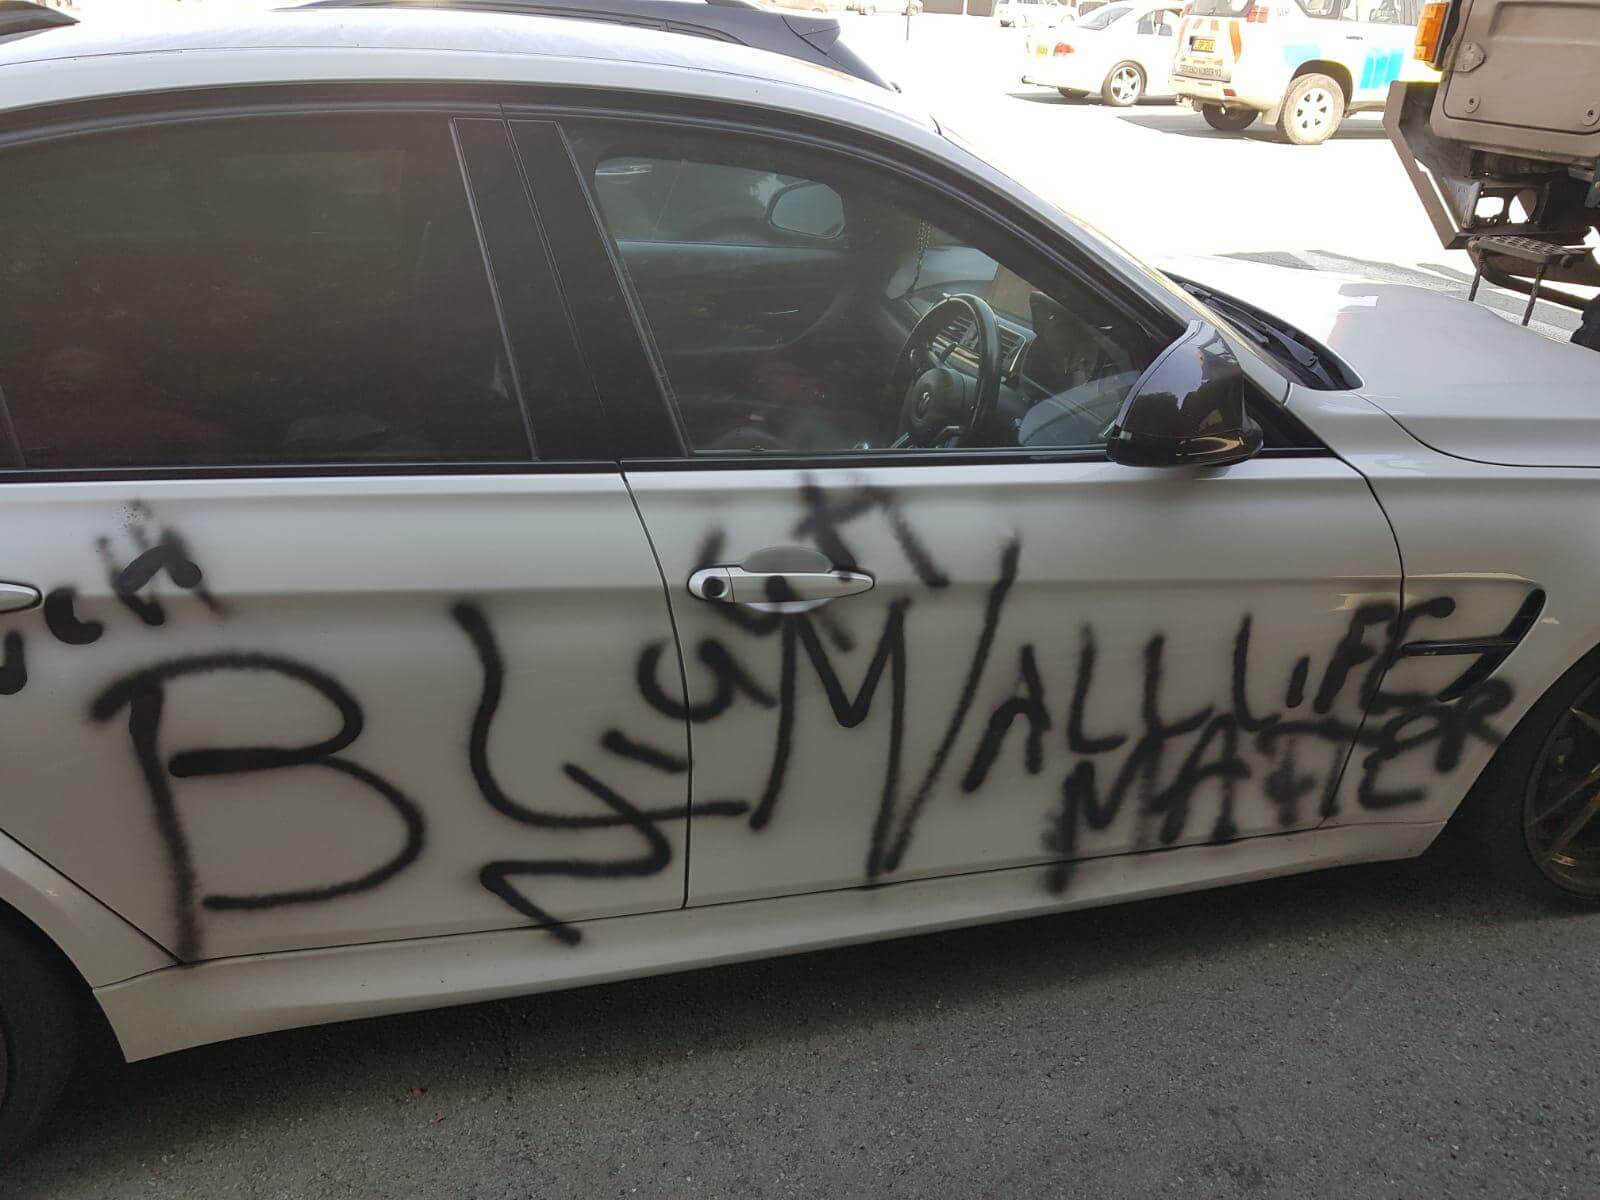 Absolutely Disgusting – Soldier’s Car Vandalised With Racial Slur